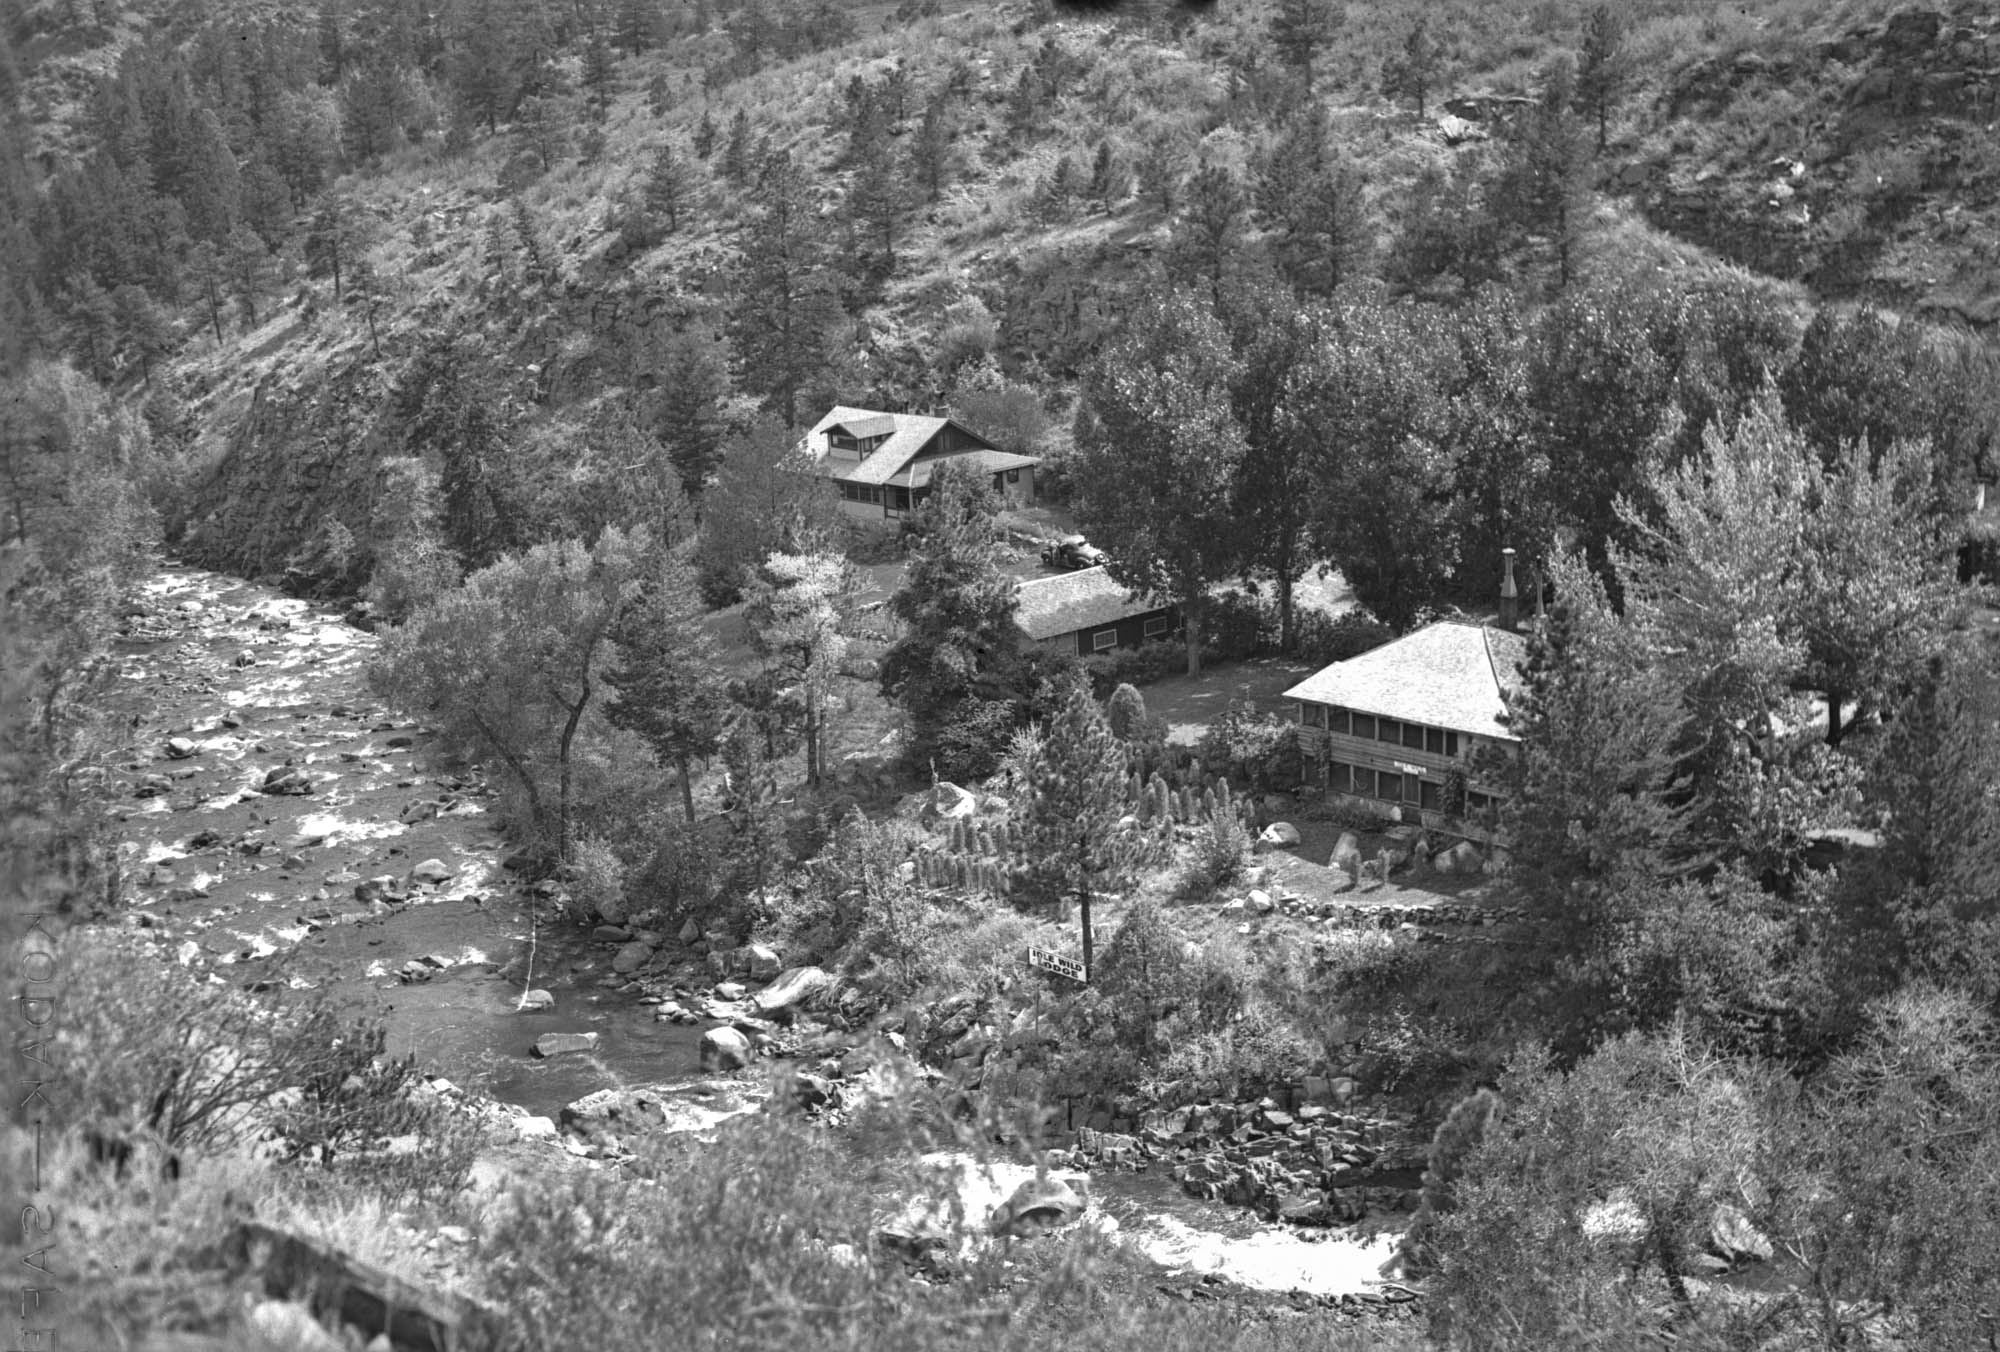 Idlewild Lodge - idlewildlodge.github.io - Circa 1940 - Idlewild - Looking South At Idlewild Lodge, DAMFINO An